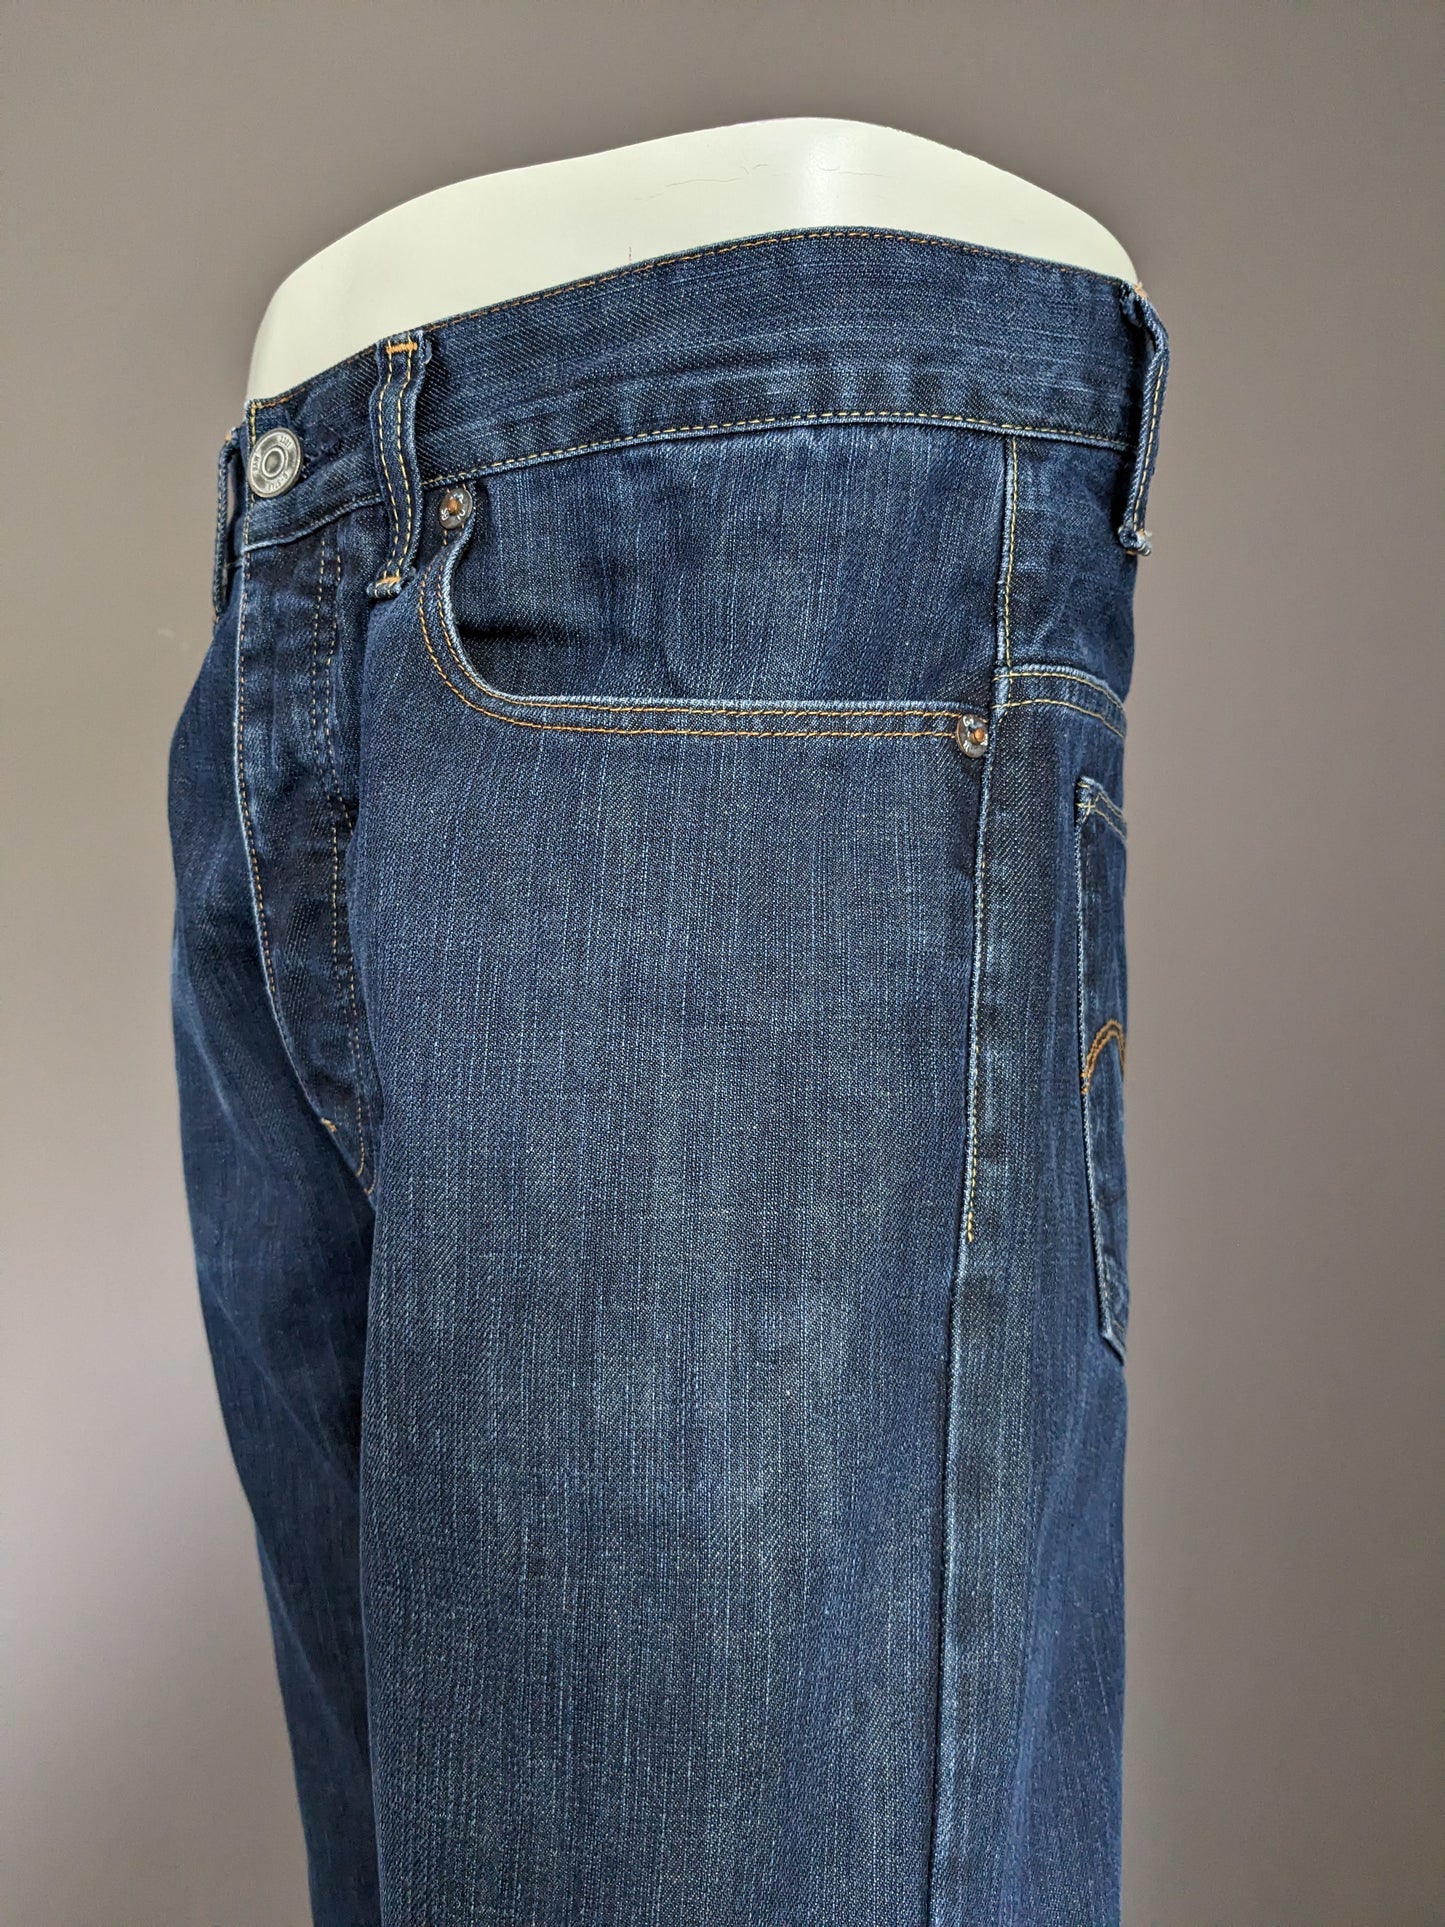 G-Star Raw Jeans. Dunkelblau gefärbt. Größe W31 - L32.